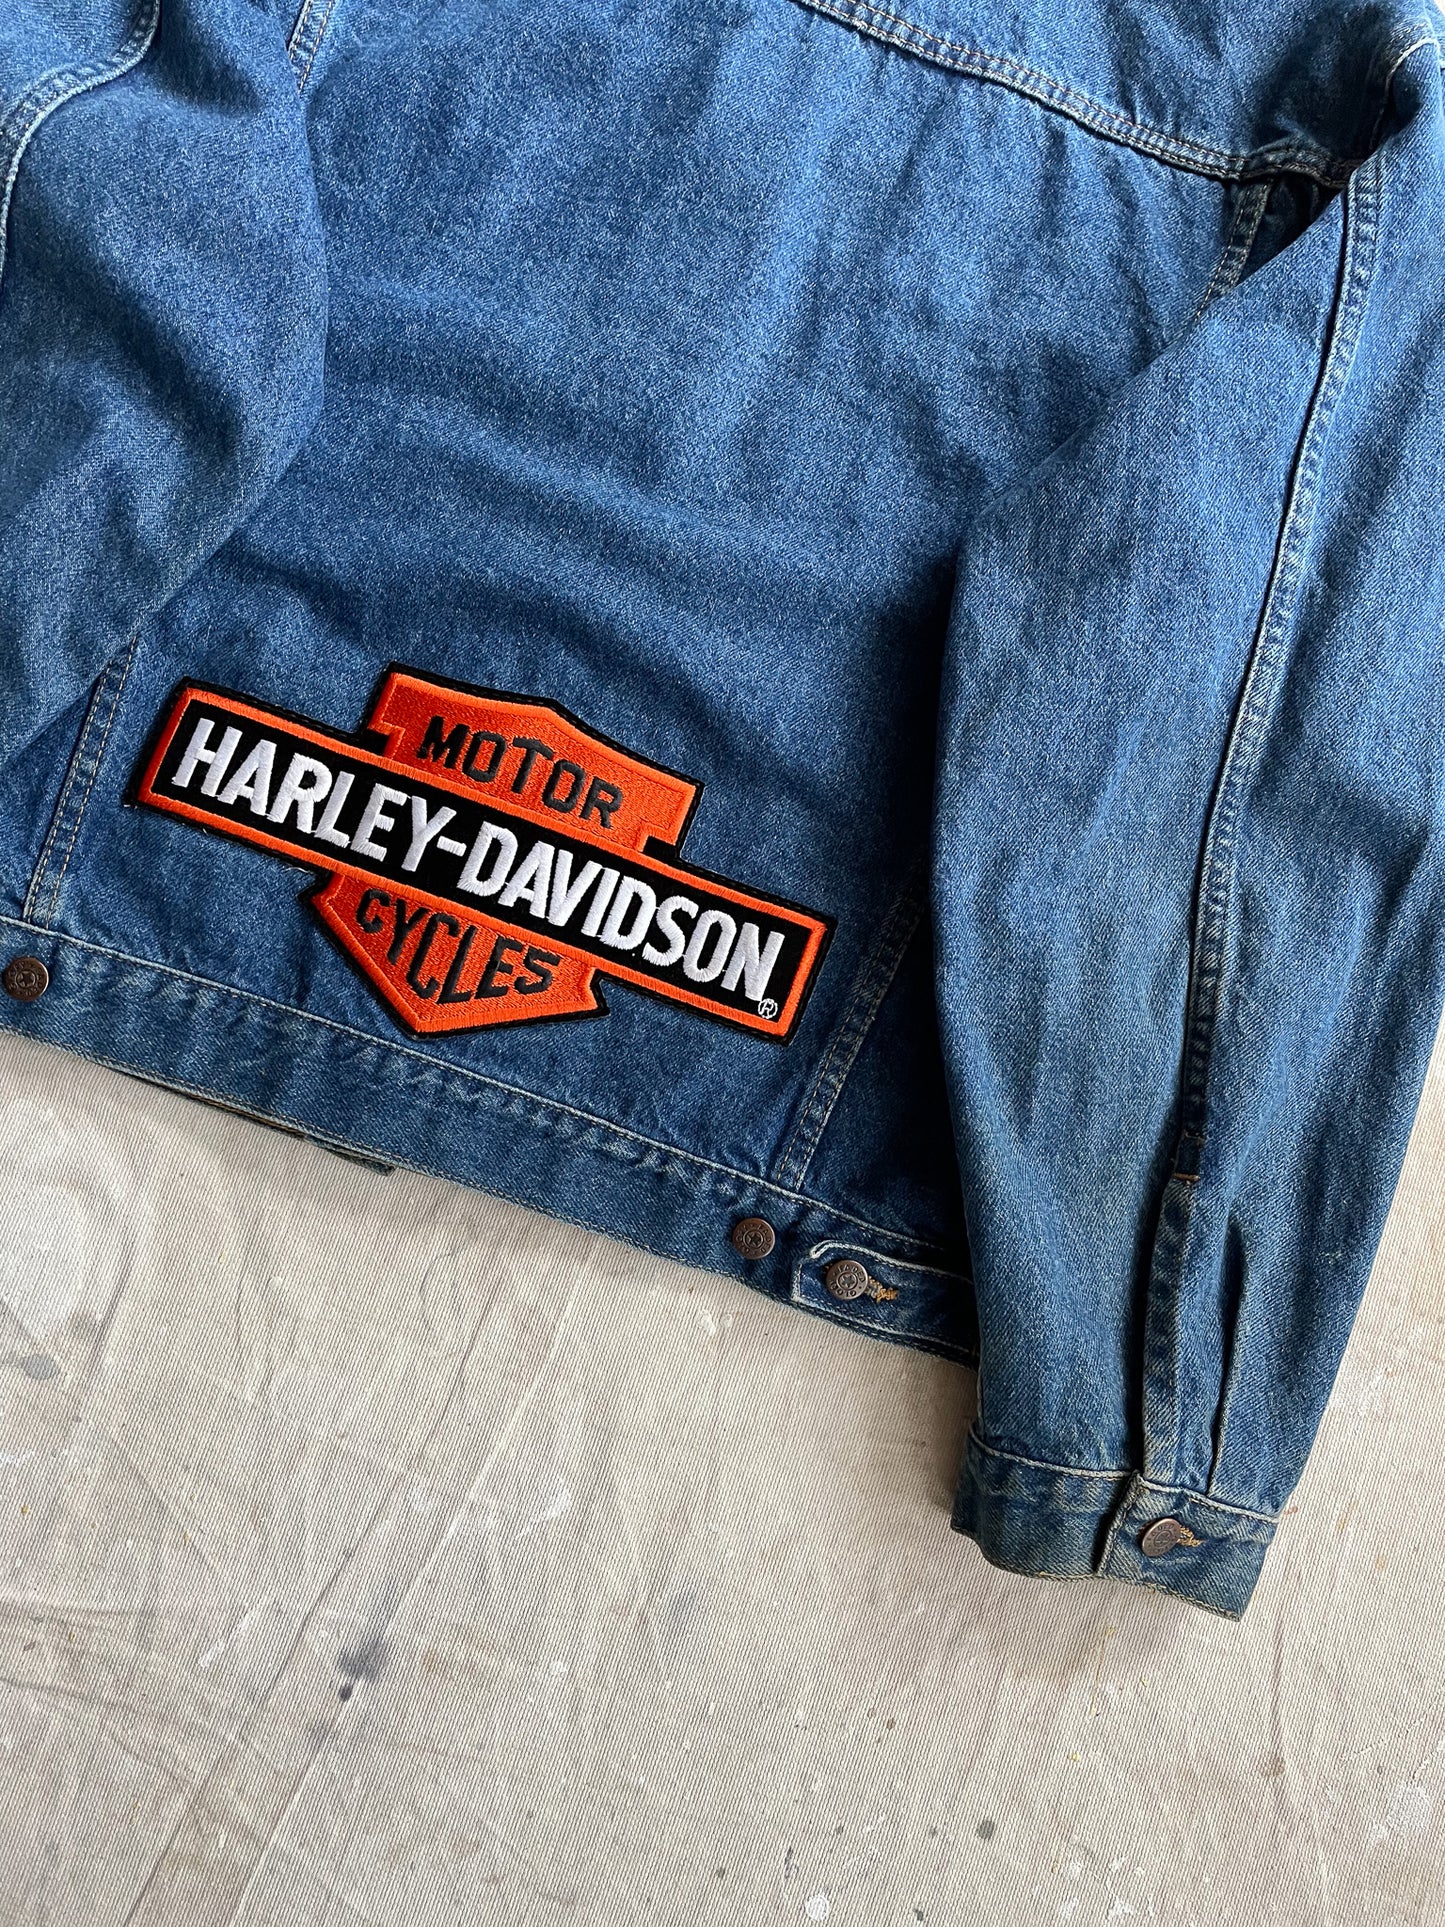 Harley-Davidson Patched Denim Jacket—[XL]